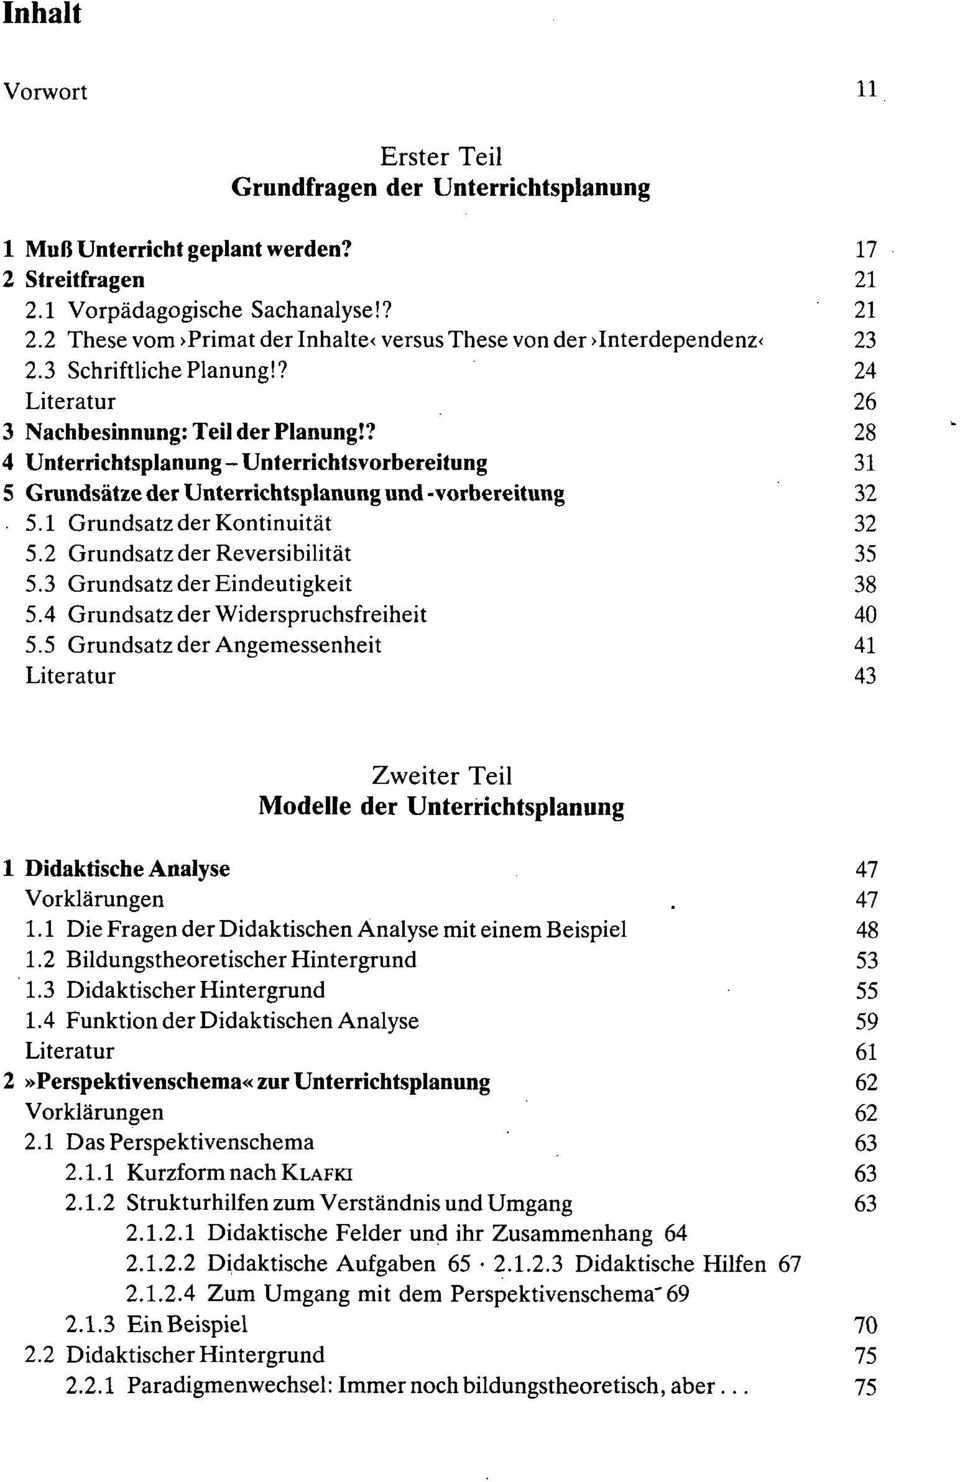 Handbuch Unterrichtsplanung Pdf Free Download